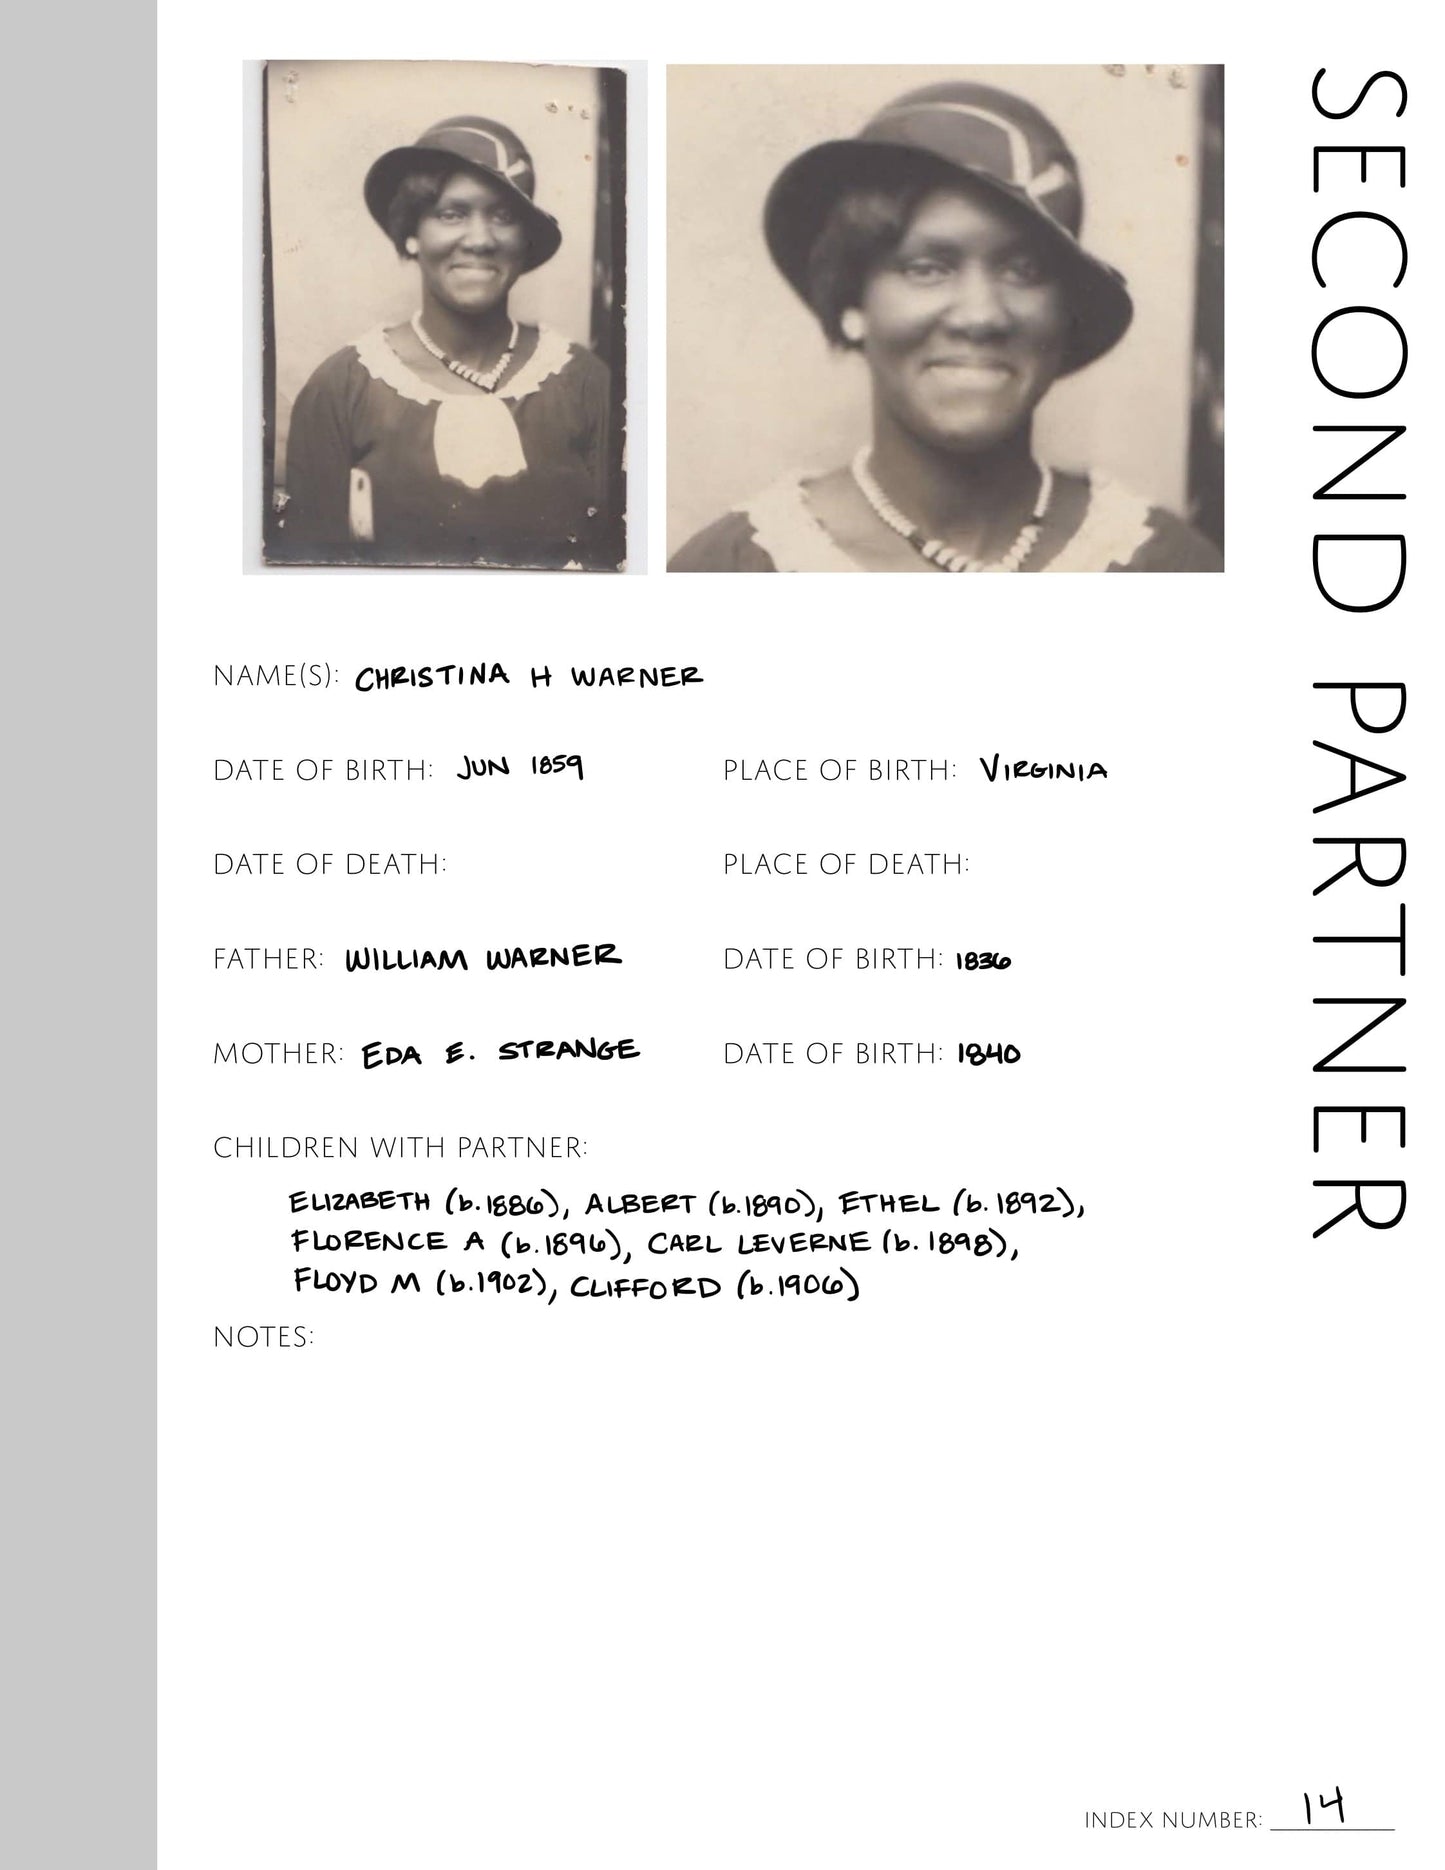 Second Partner: Printable Genealogy Page (Digital Download)